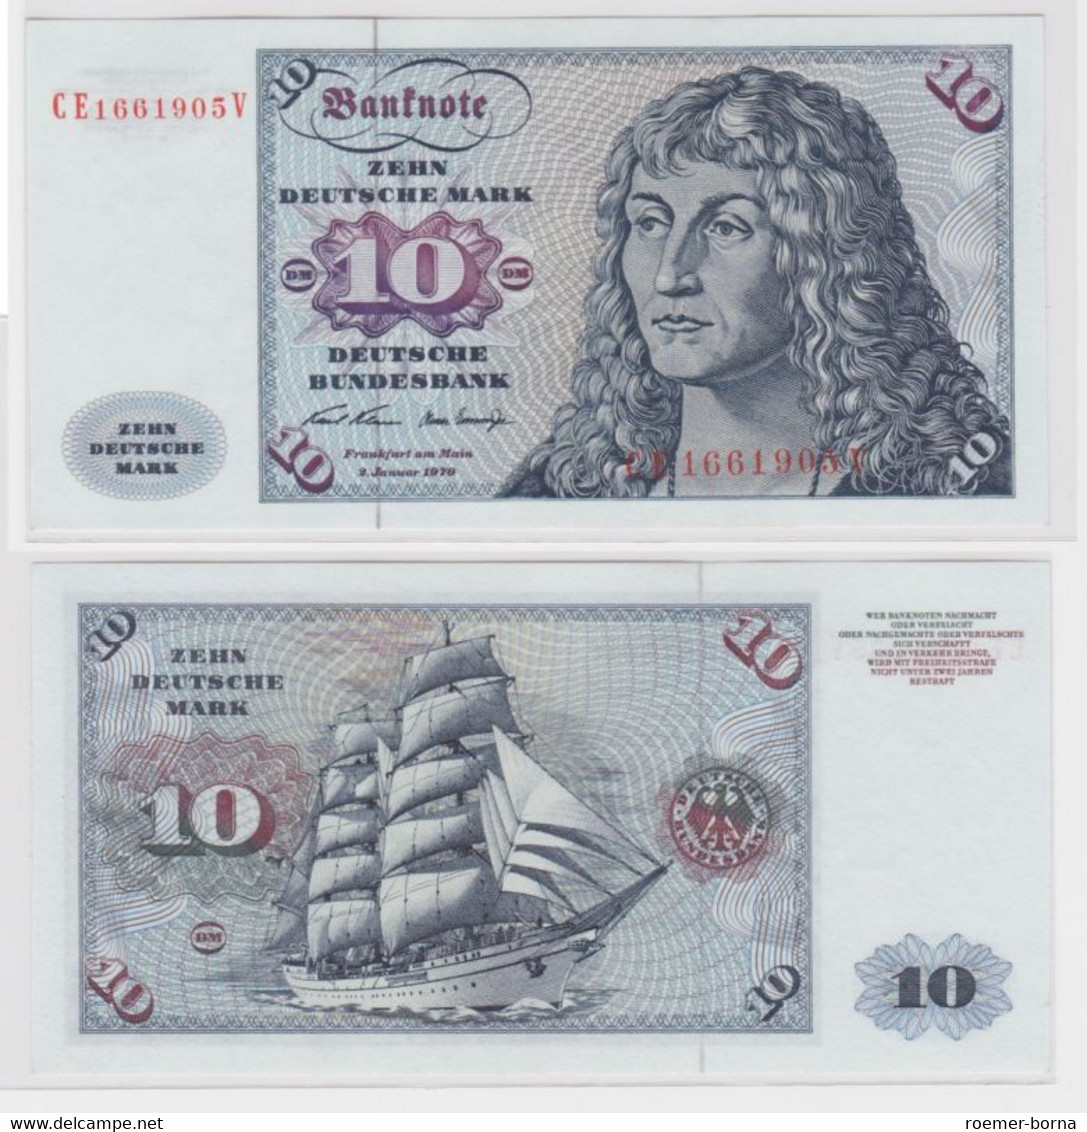 T144997 Banknote 10 DM Deutsche Mark Ro. 270b Schein 2.Jan. 1970 KN CE 1661905 V - 10 Deutsche Mark